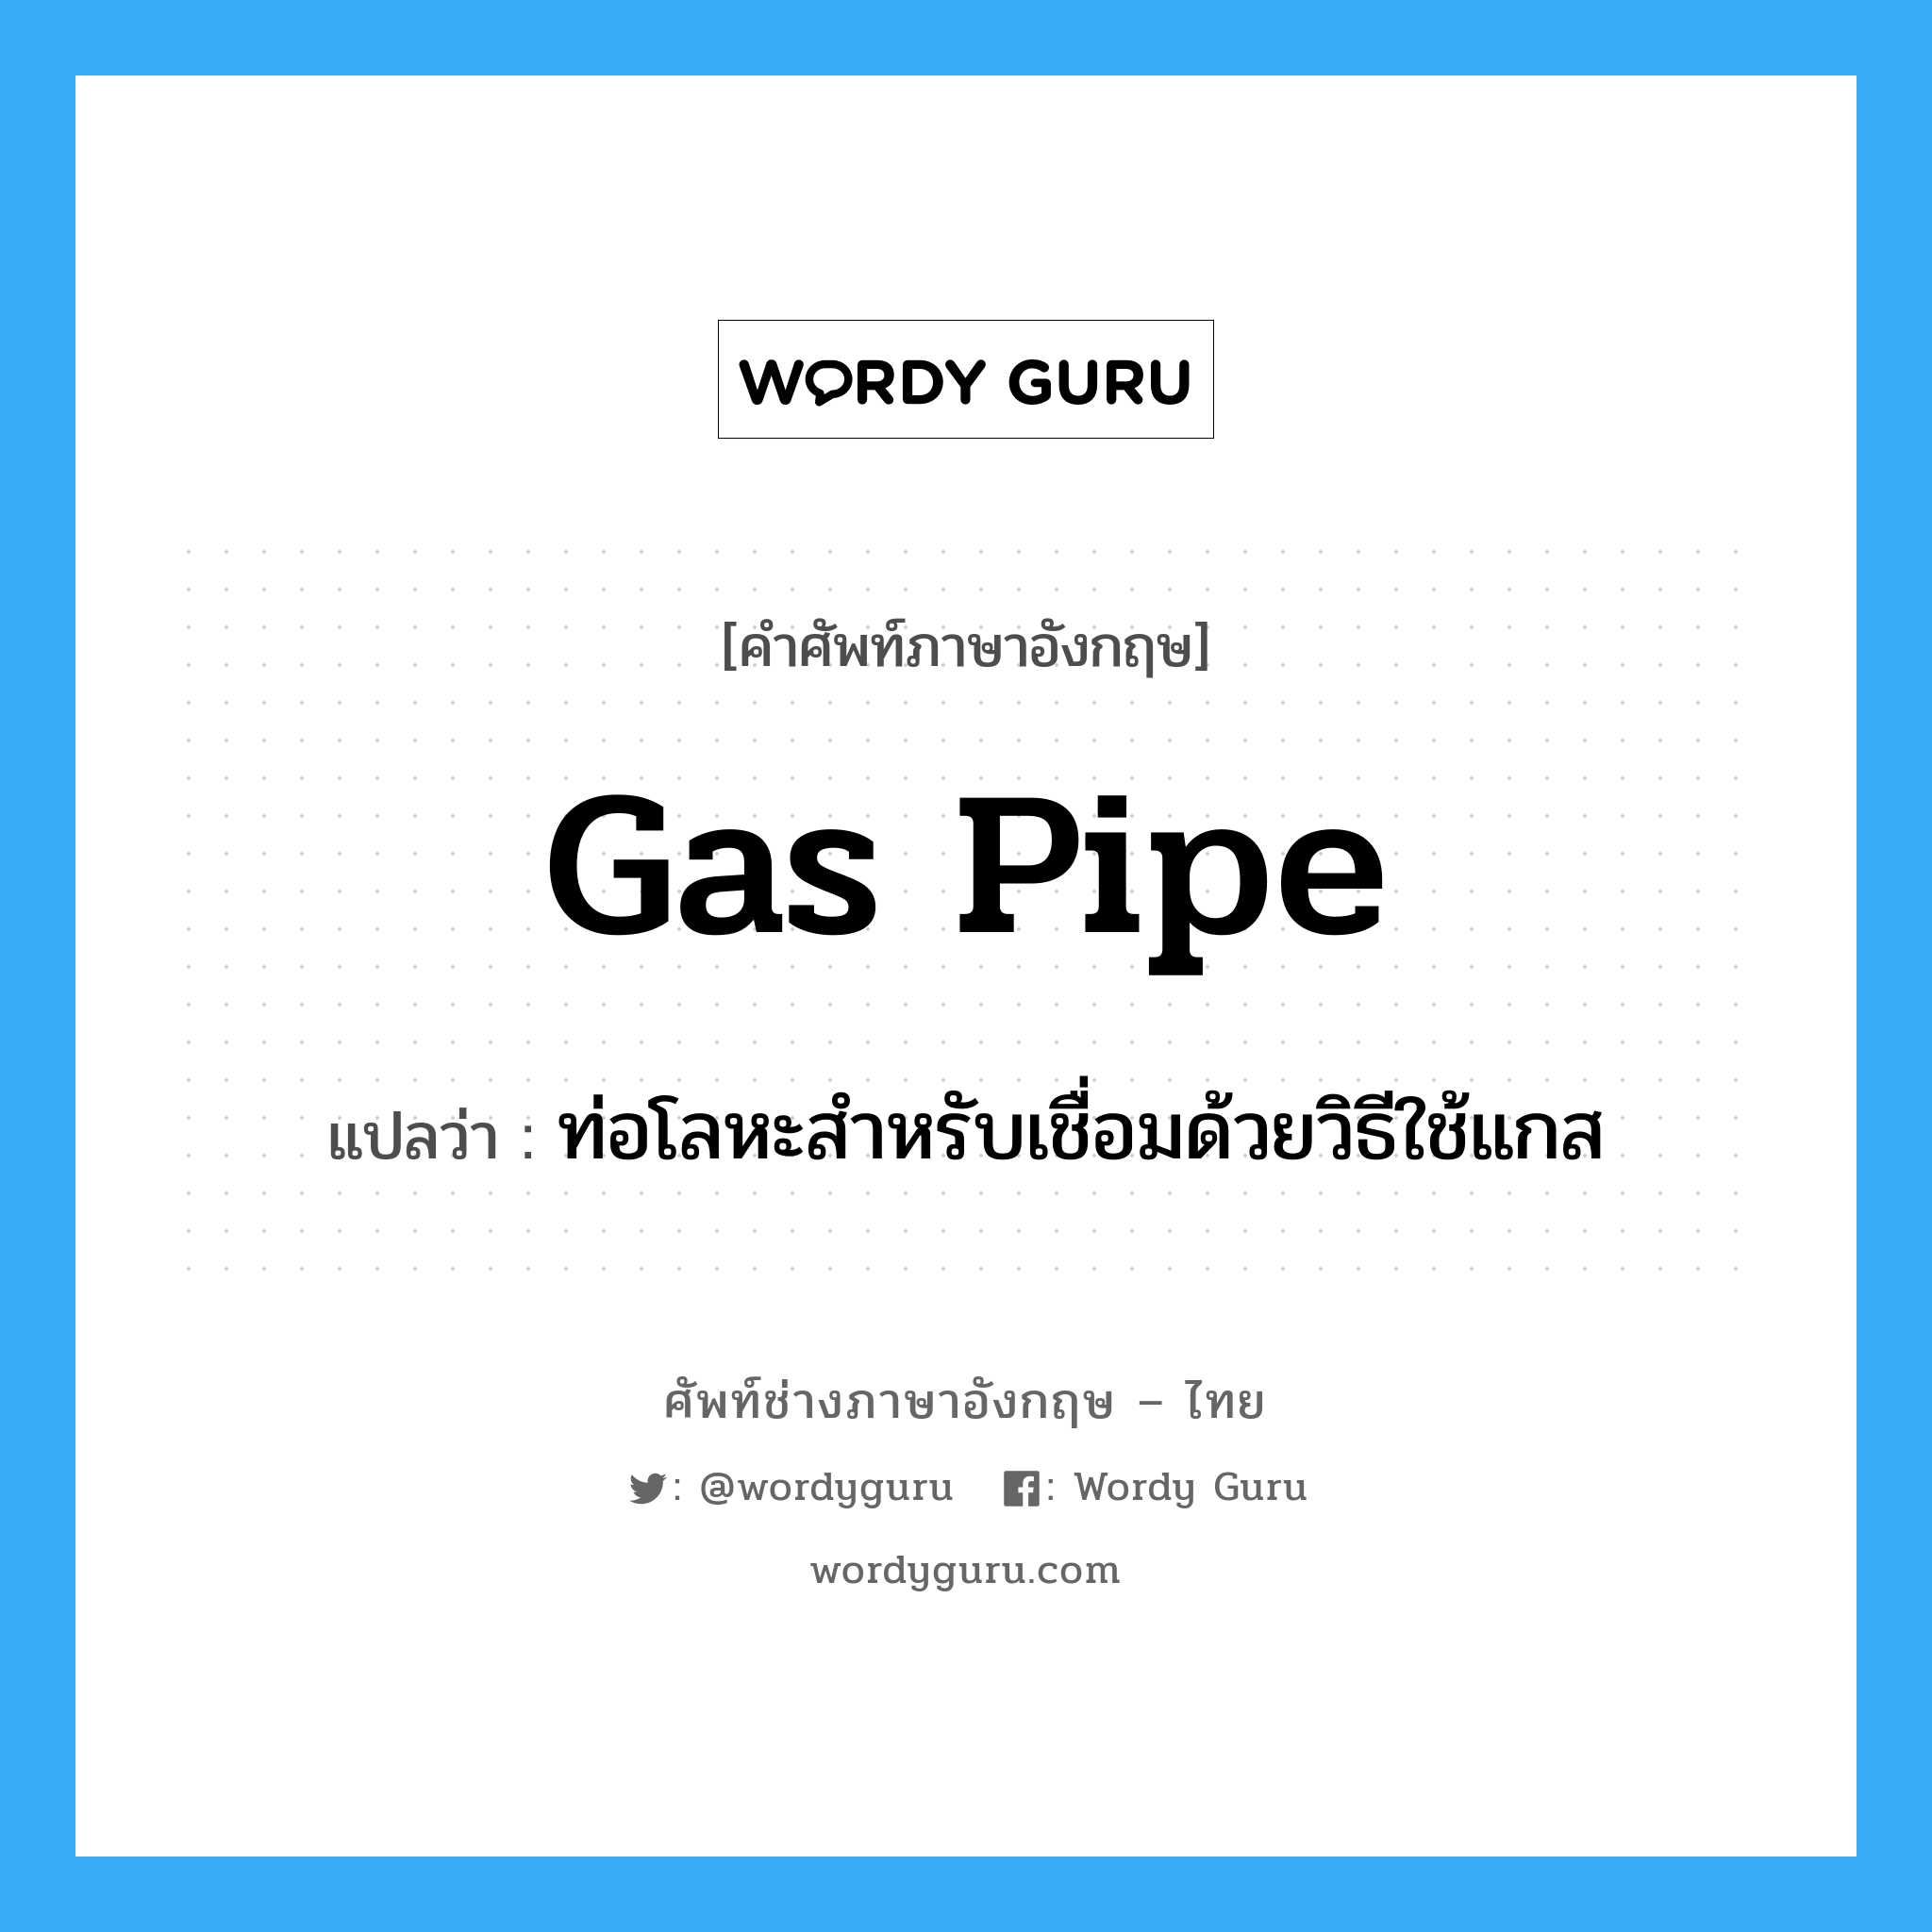 ท่อโลหะสำหรับเชื่อมด้วยวิธีใช้แกส ภาษาอังกฤษ?, คำศัพท์ช่างภาษาอังกฤษ - ไทย ท่อโลหะสำหรับเชื่อมด้วยวิธีใช้แกส คำศัพท์ภาษาอังกฤษ ท่อโลหะสำหรับเชื่อมด้วยวิธีใช้แกส แปลว่า gas pipe